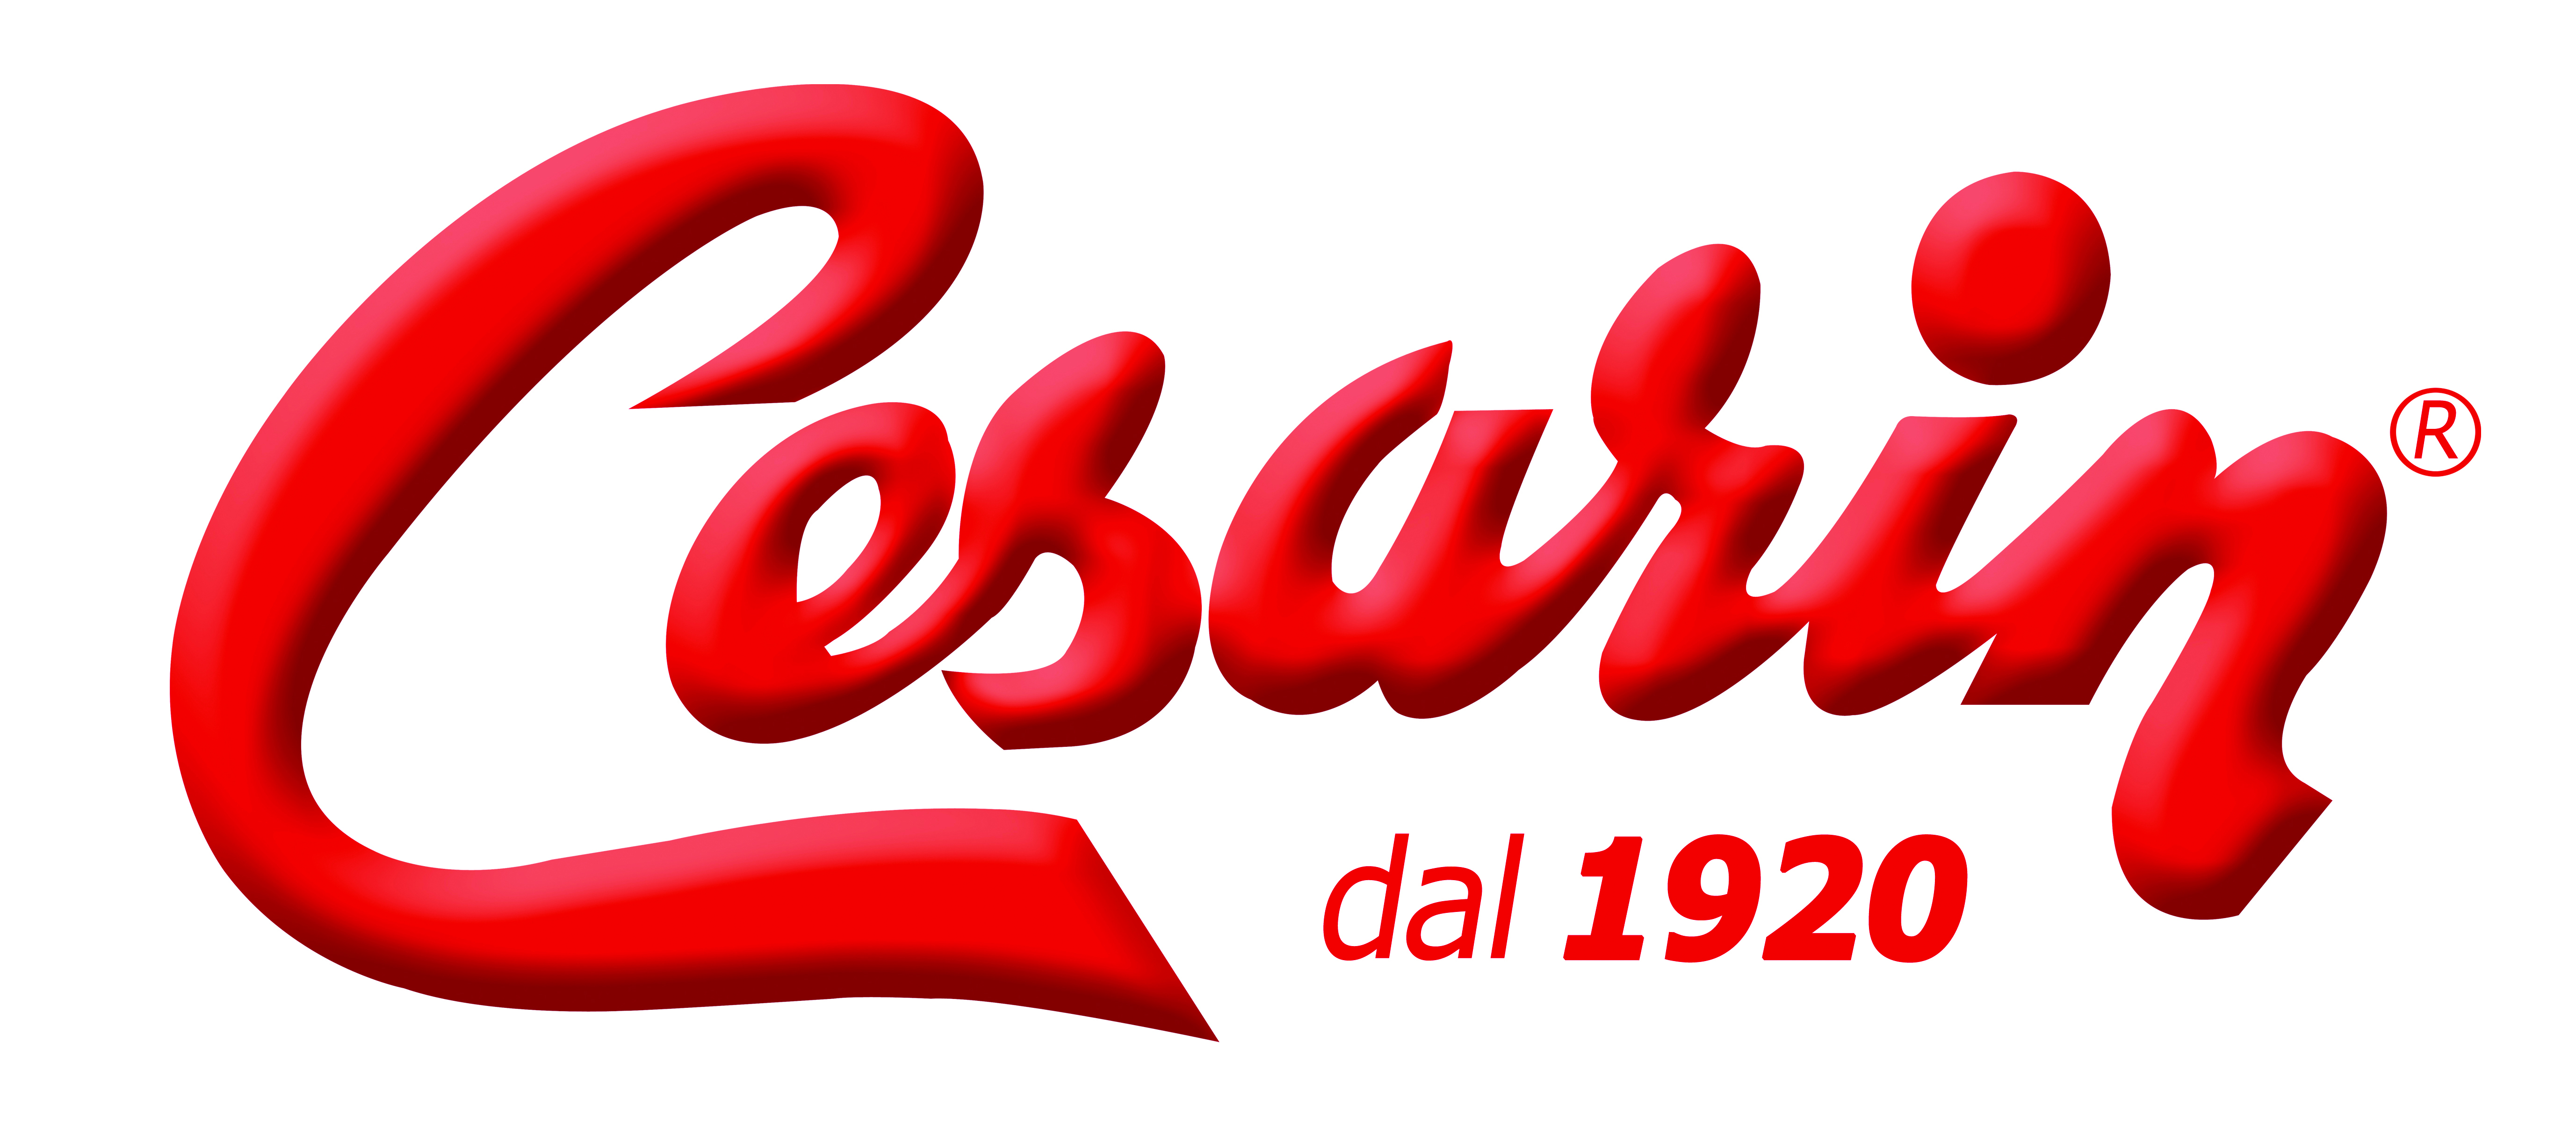 Logo Cesarin Istituzionale